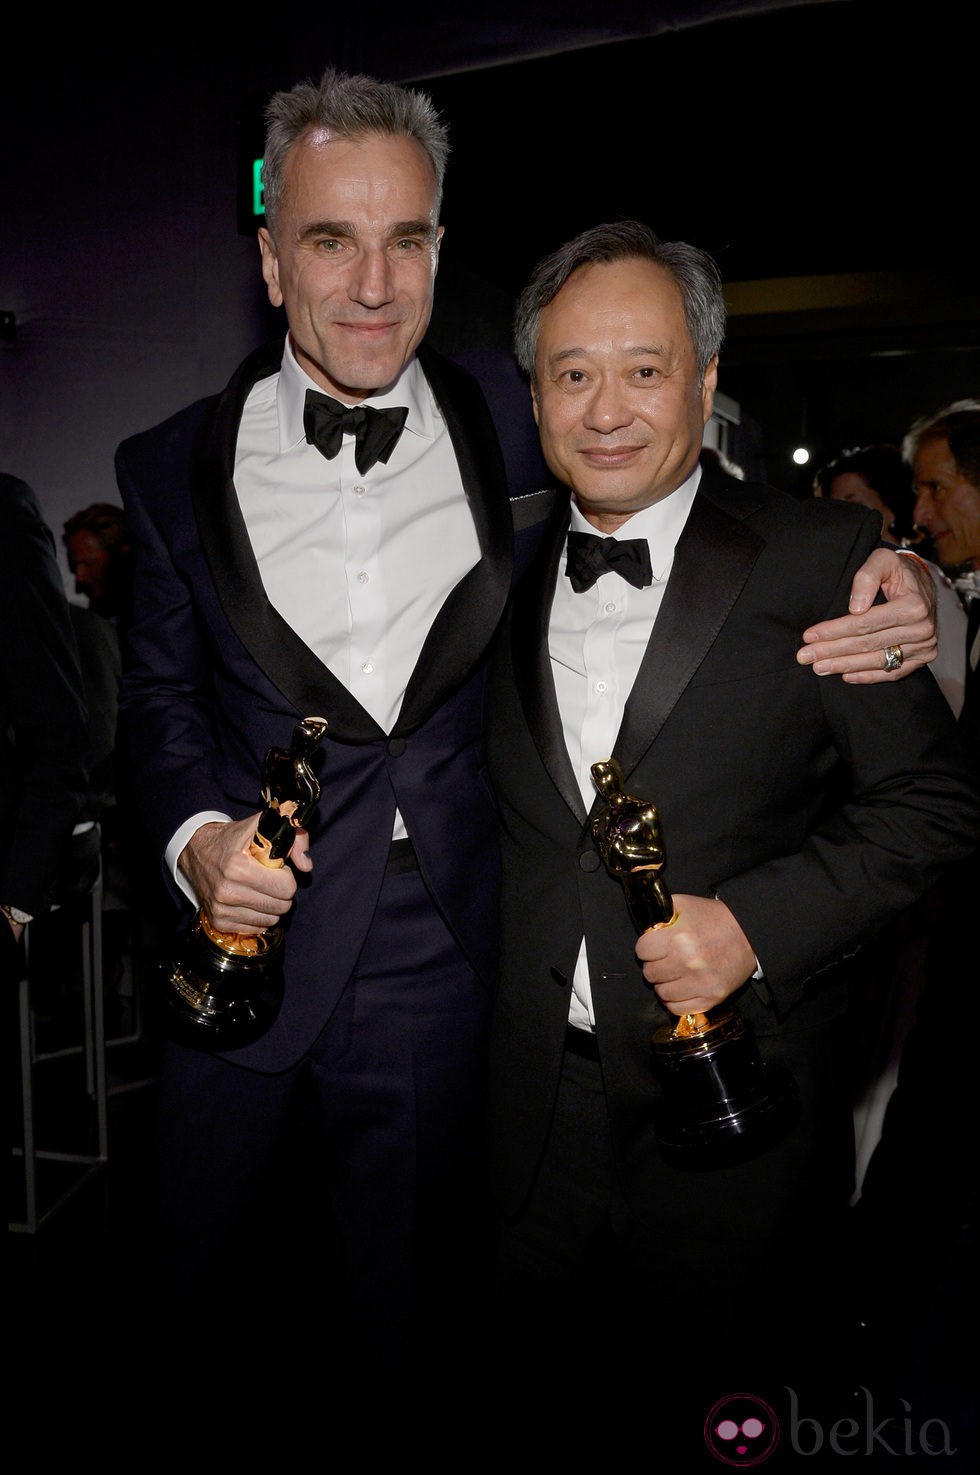 Daniel Day-Lewis y Ang Lee posando con sus Oscar 2013 en la fiesta Governors Ball